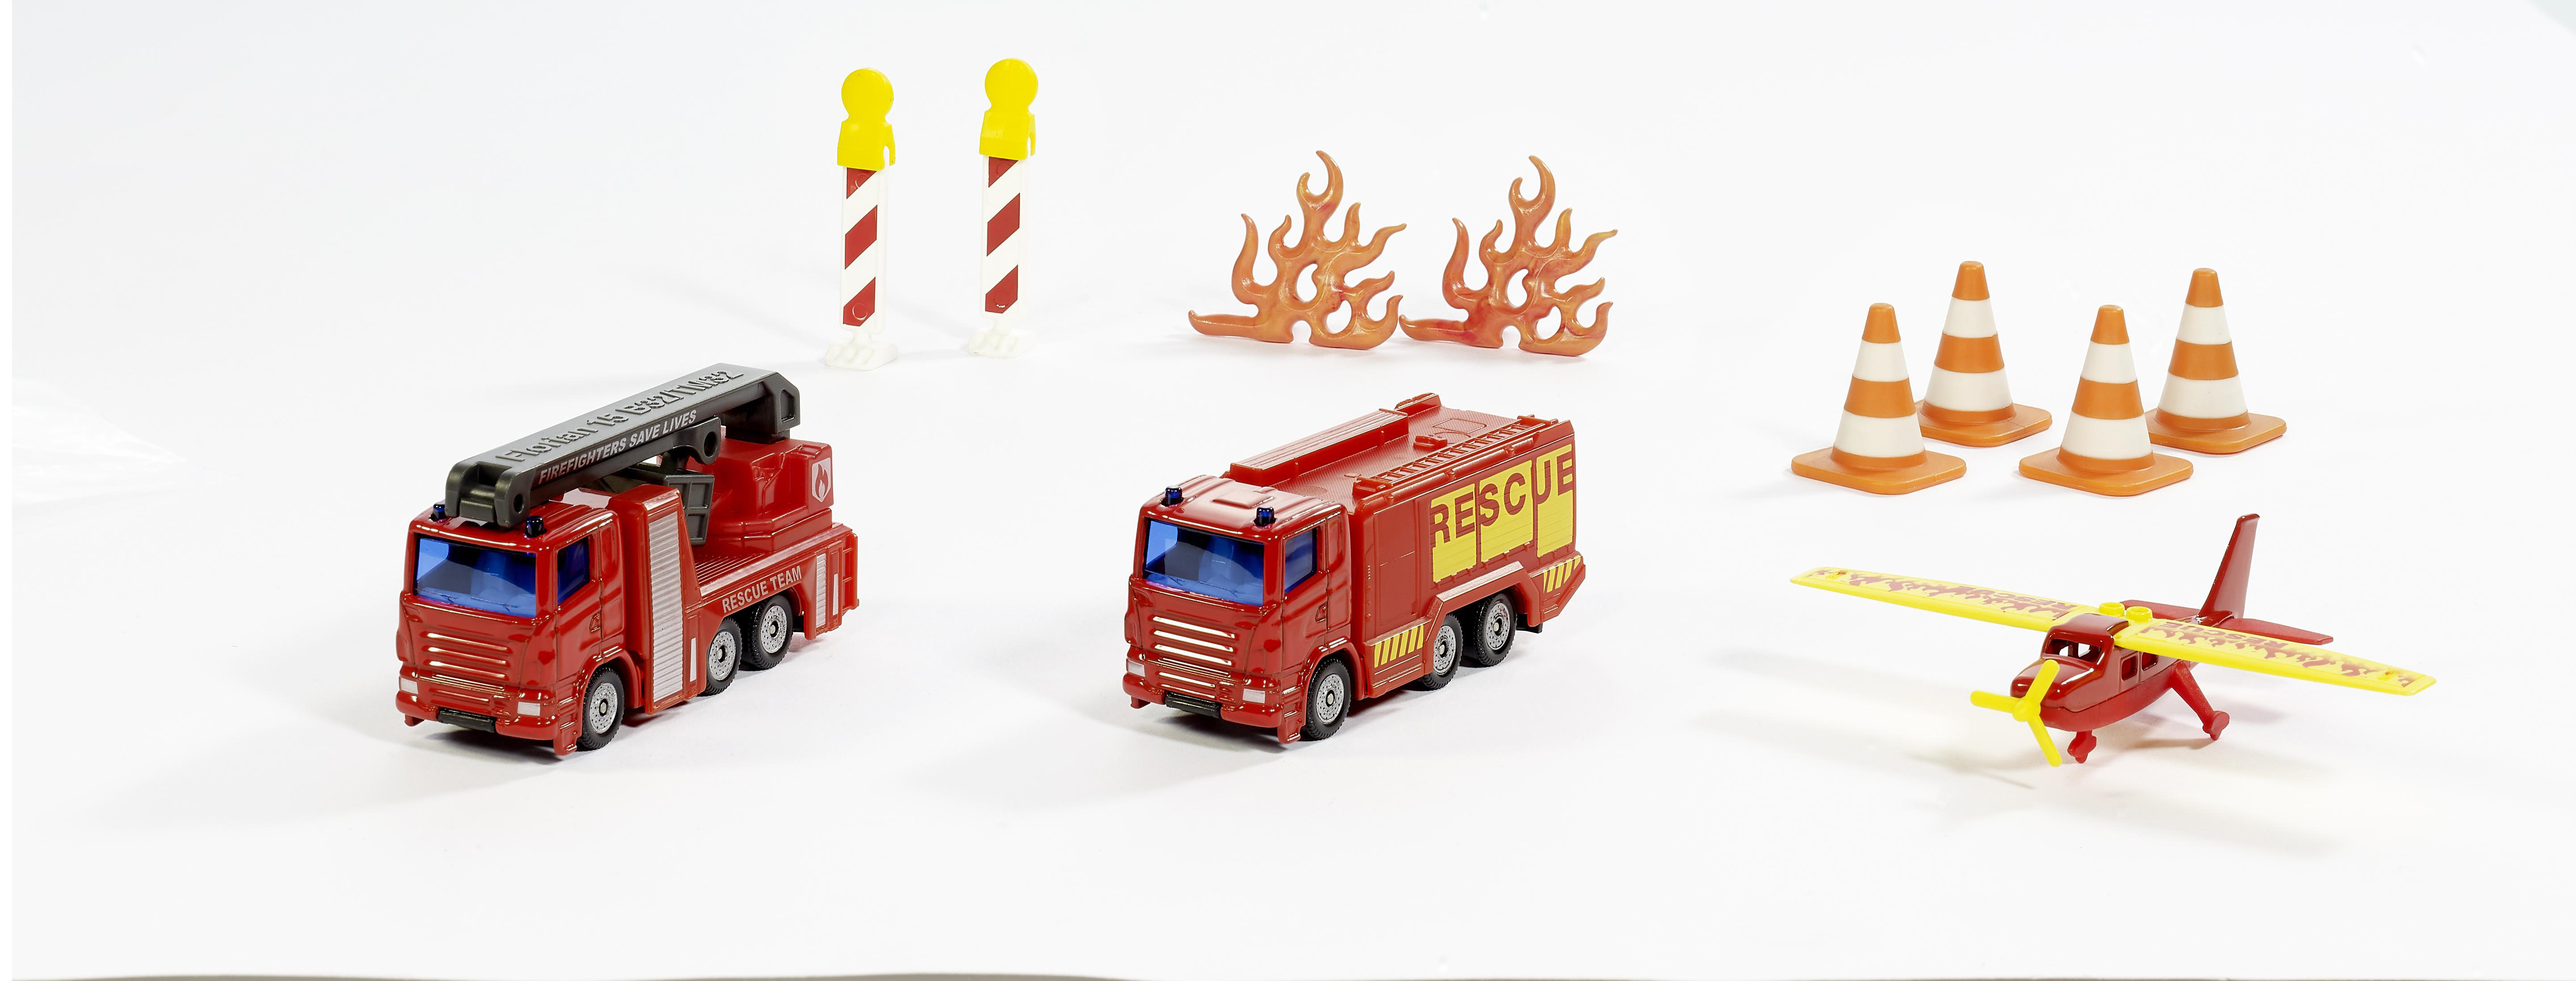 6330 SIKU Feuerwehr Mehrfarbig Spielzeugmodellfahrzeug, Geschenkset